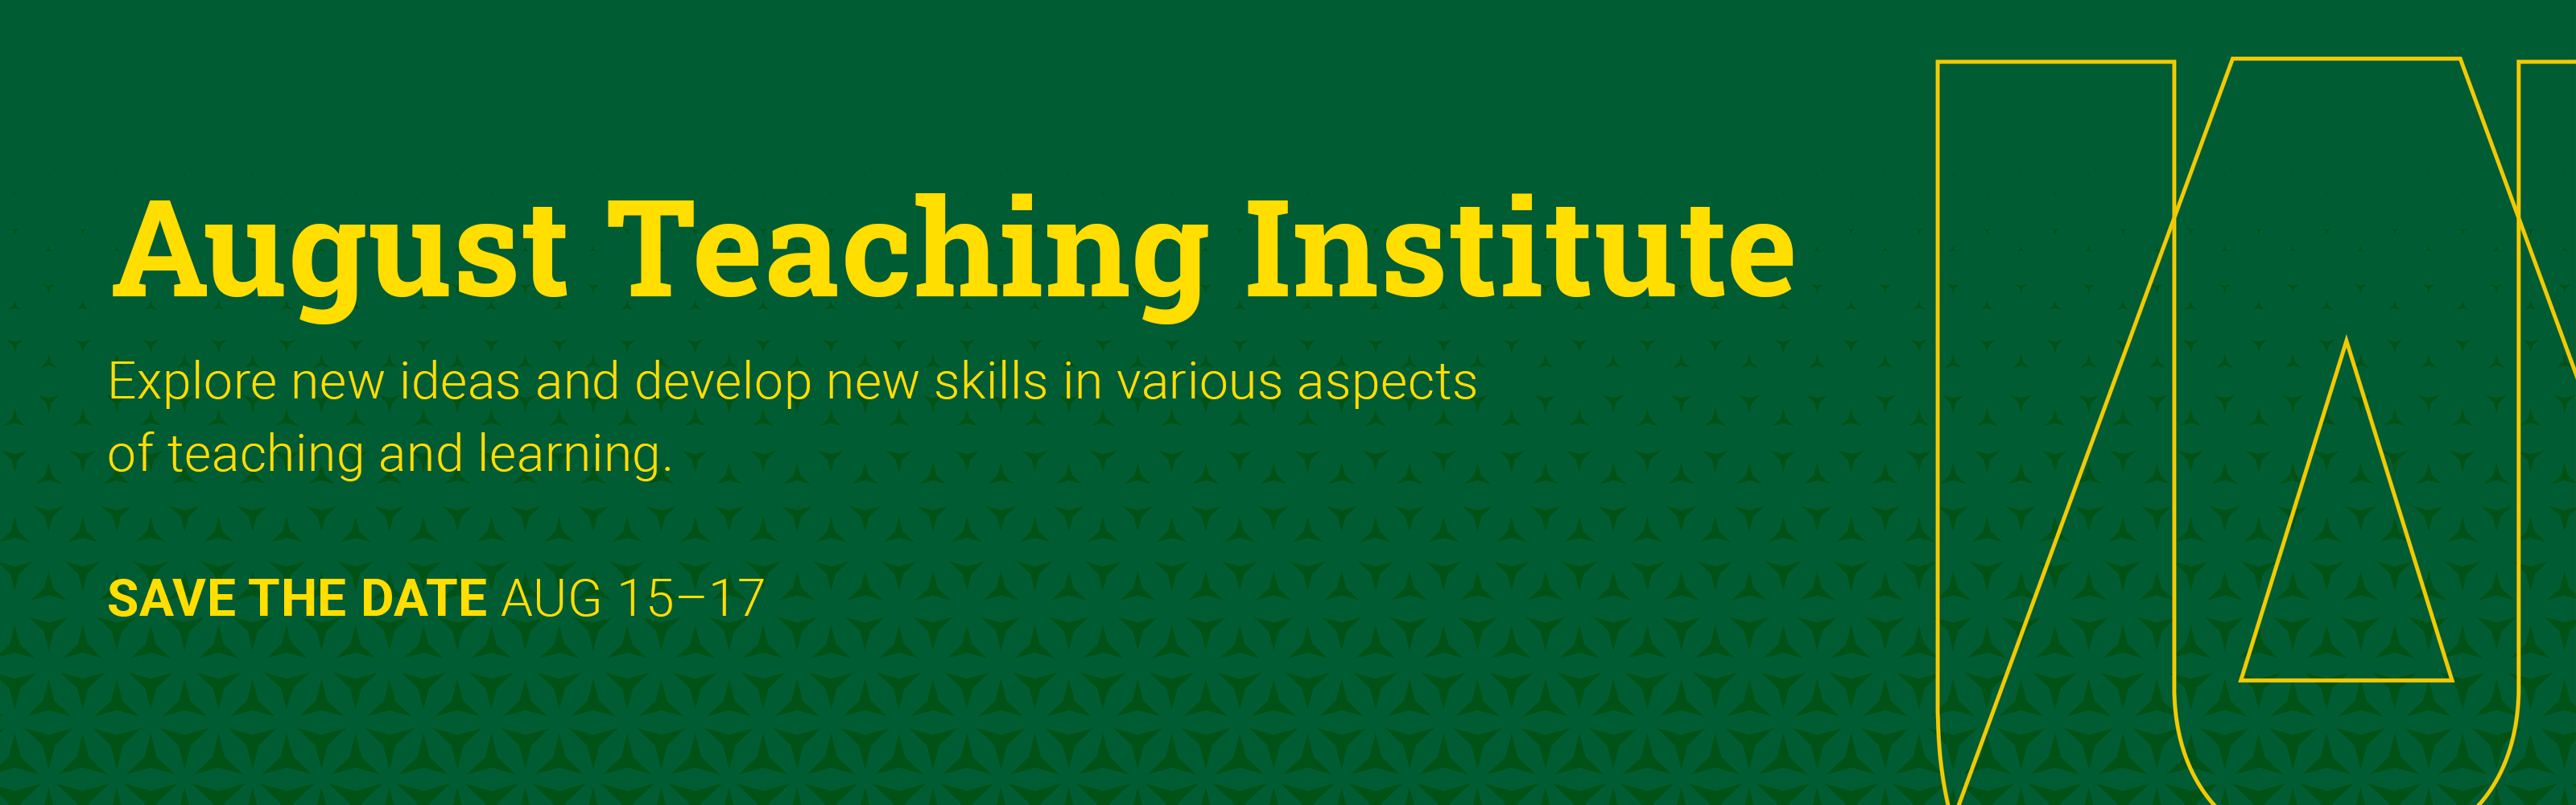 August Teaching Institute